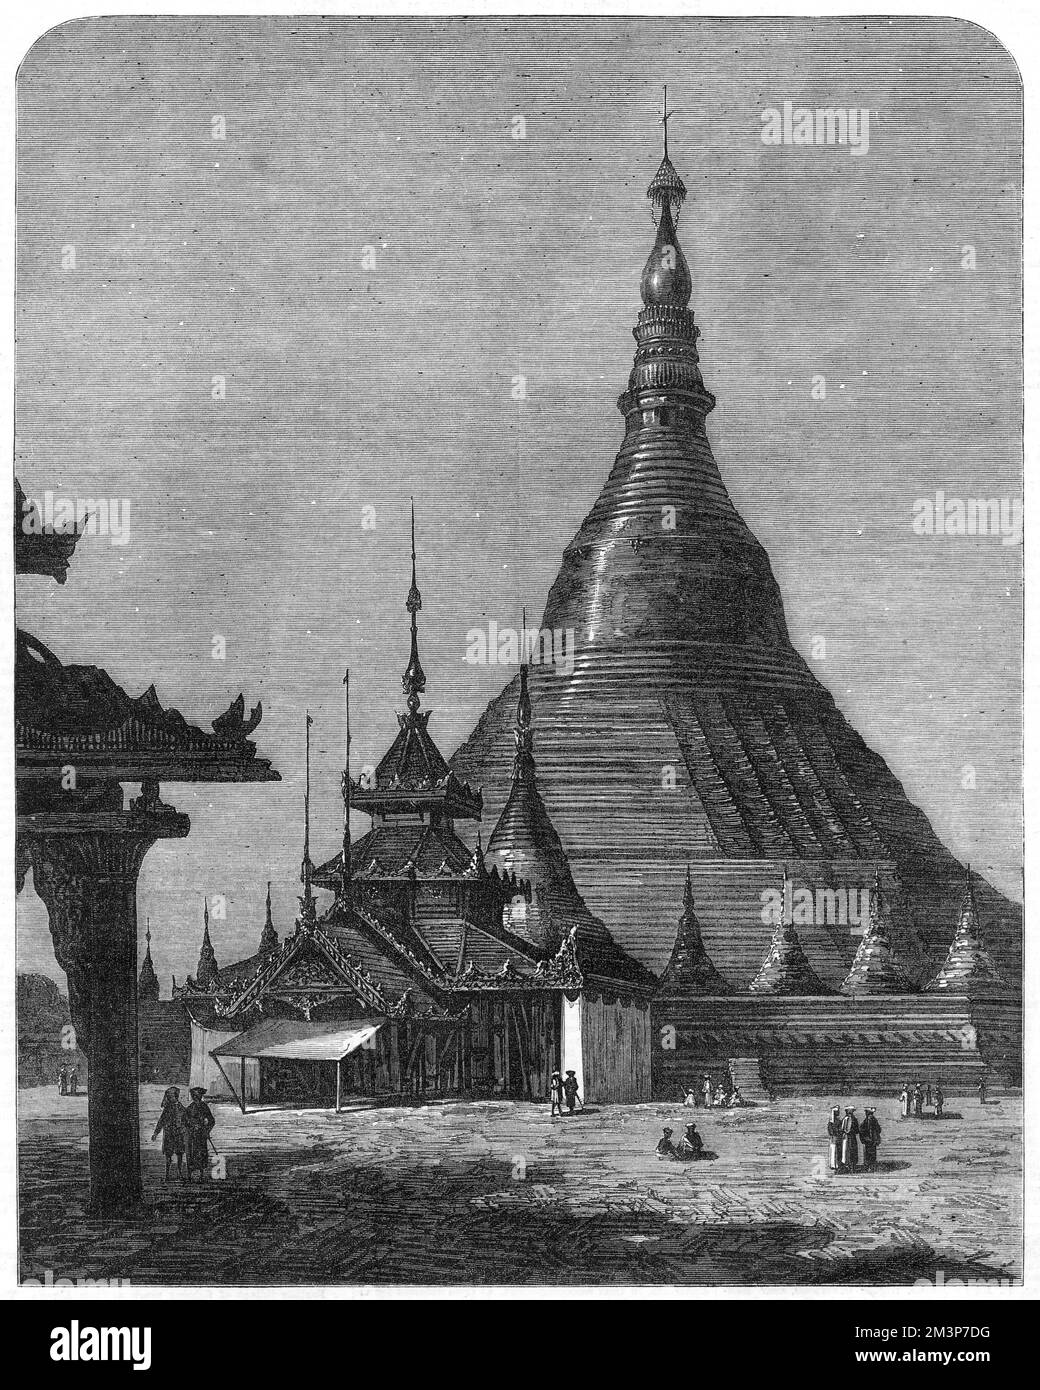 La Pagoda Shweidagon a Yangon, Birmania (Myanmar), ufficialmente chiamata Shweidago Zedi Daw e conosciuta anche come la Pagoda d'Oro, o la Pagoda Grande Dagon. La struttura dorata è alta 99 metri. Data: 1872 Foto Stock